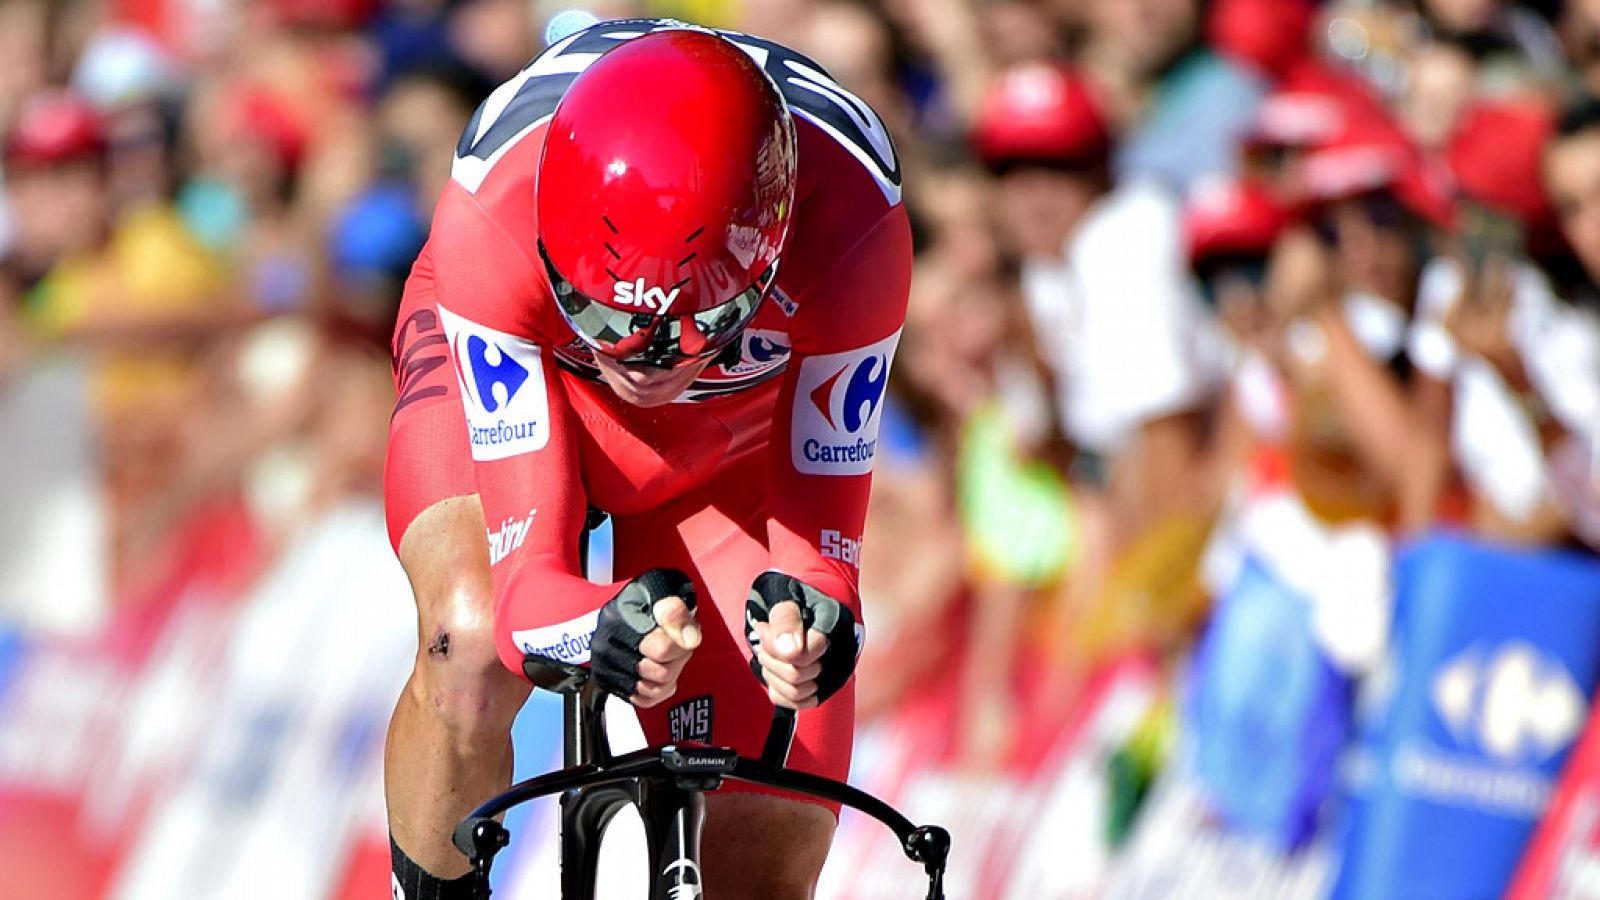 El británico Chris Froome (Sky) reforzó el maillot rojo de líder de la Vuelta a España tras imponerse en la decimosexta etapa, una contrarreloj individual entre el Circuito de Navarra y Logroño, con un recorrido de 40,2 kilómetros.